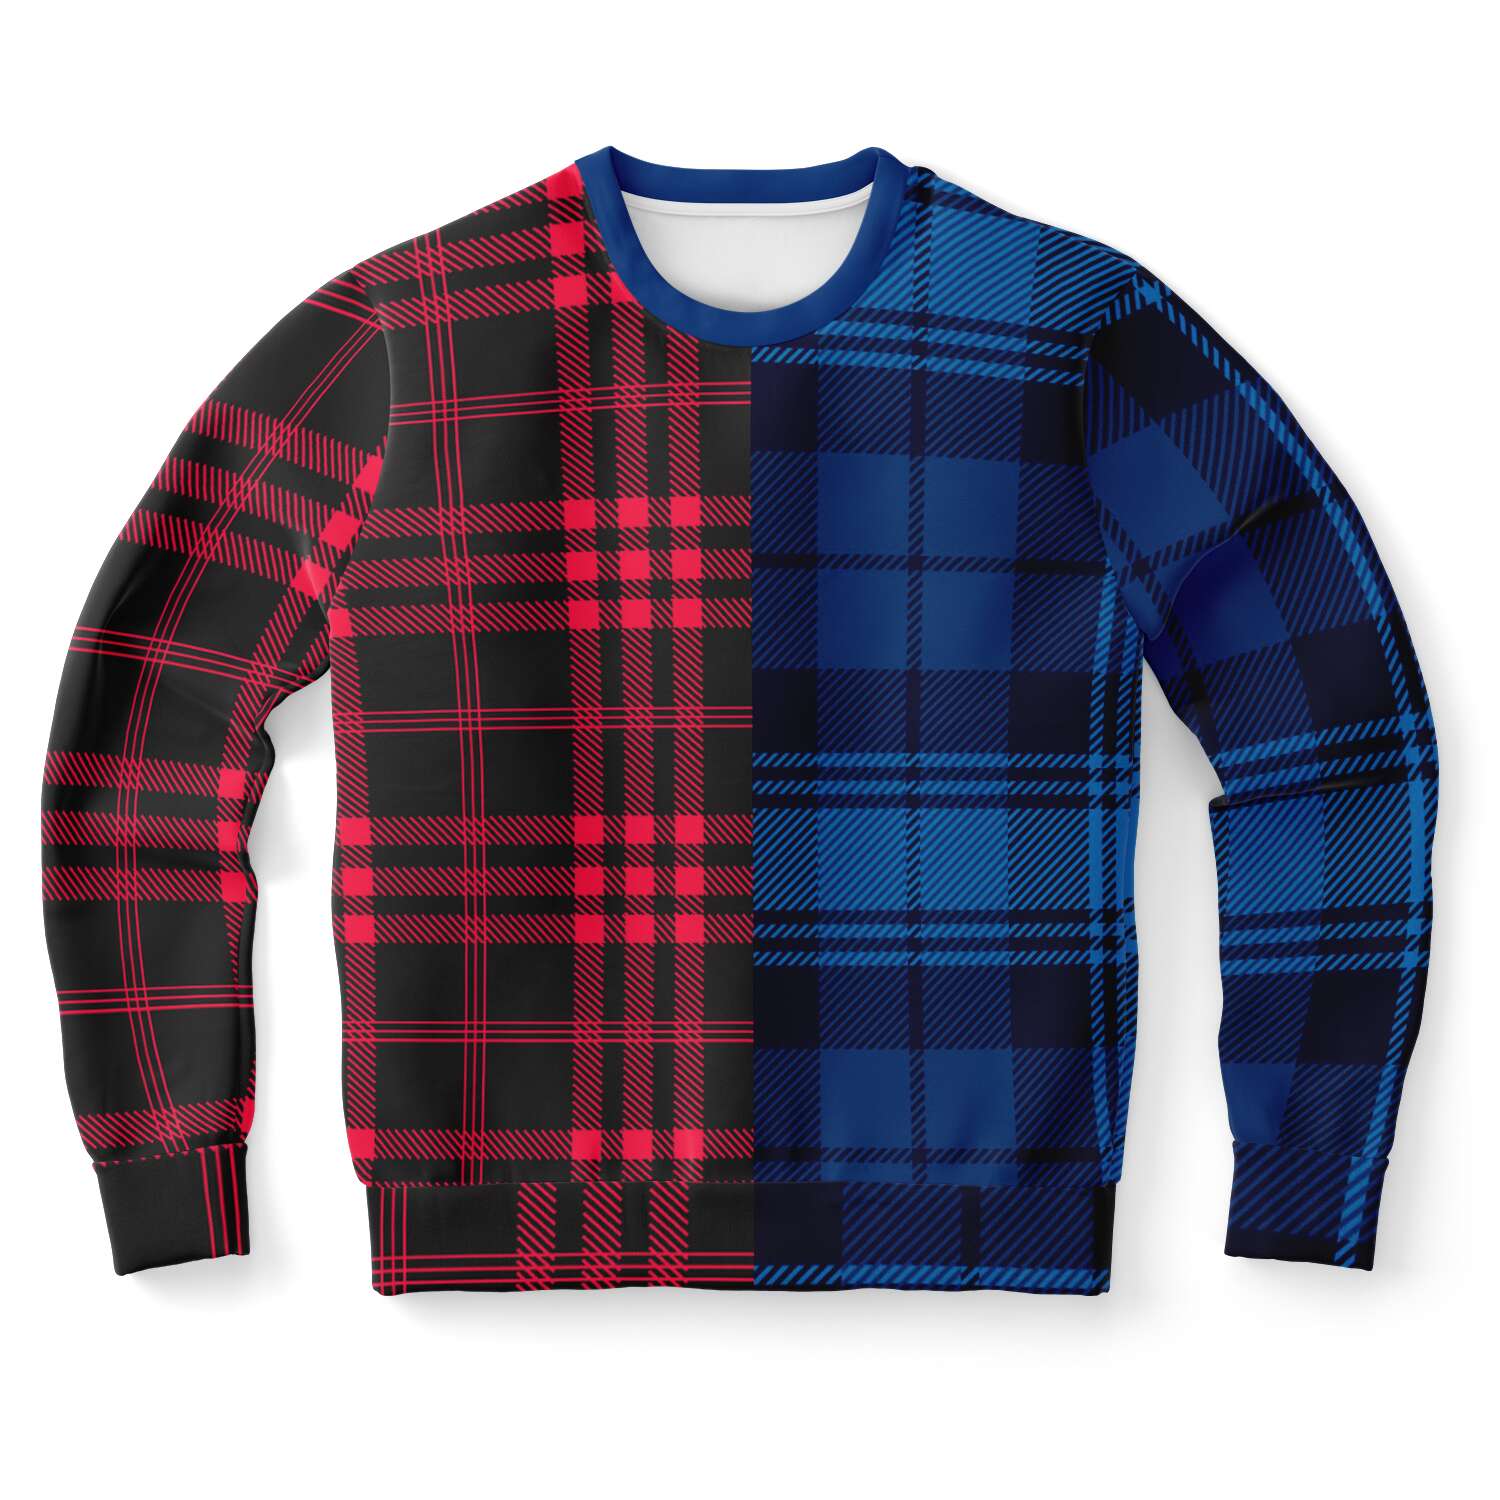 Sweatshirt - Red/Blue Plaid